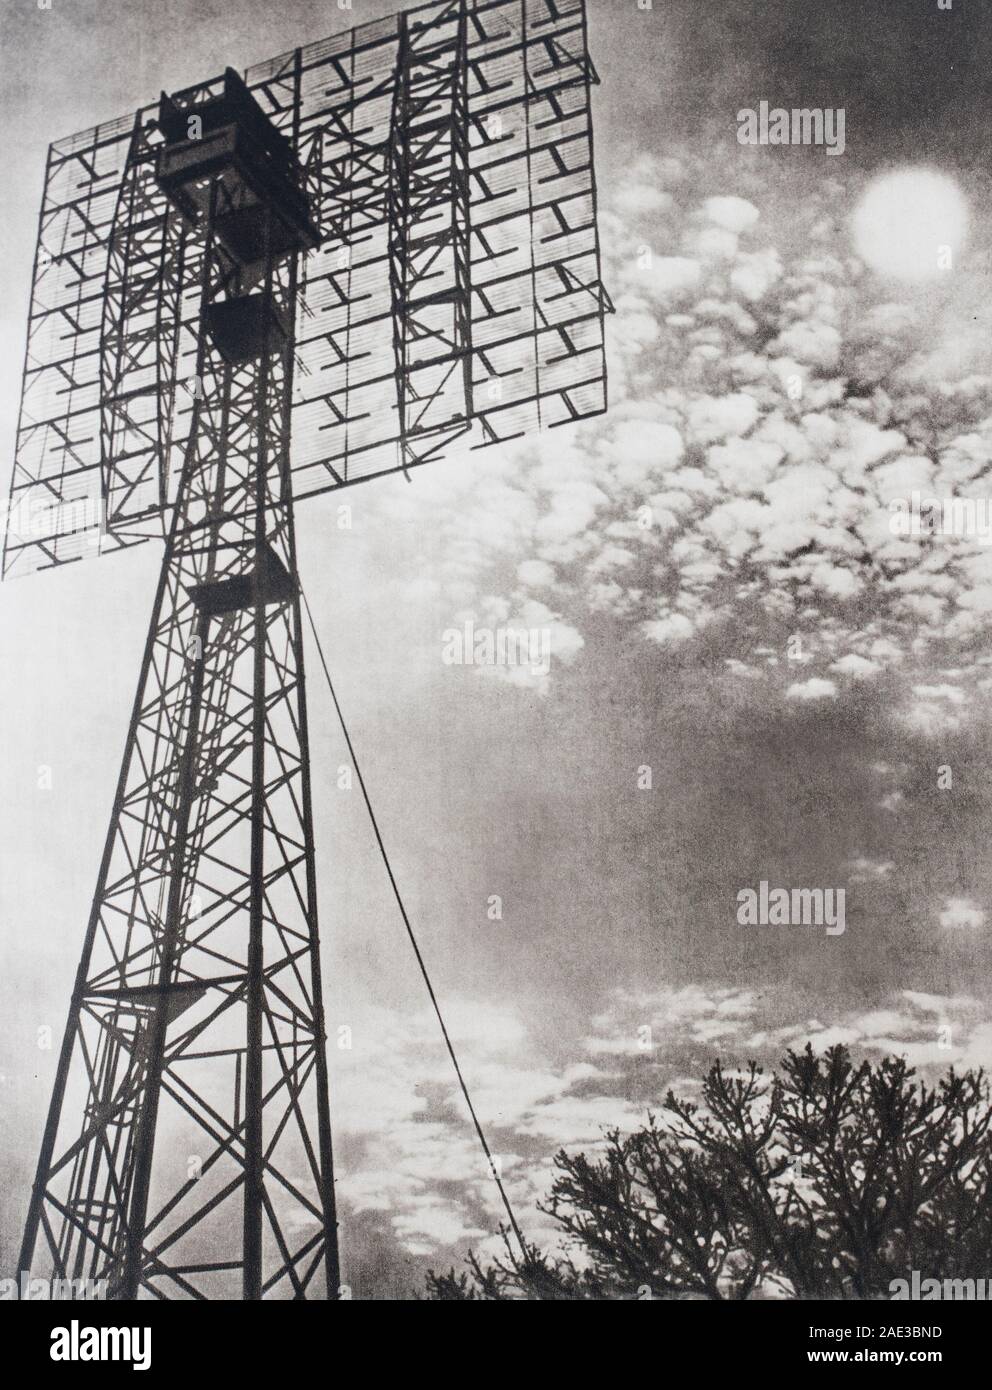 Ein Radar-Turm, das kostbare Entdeckung, der half, die Sicherheit des Luft- und Seeverkehrs gewährleisten. Stockfoto